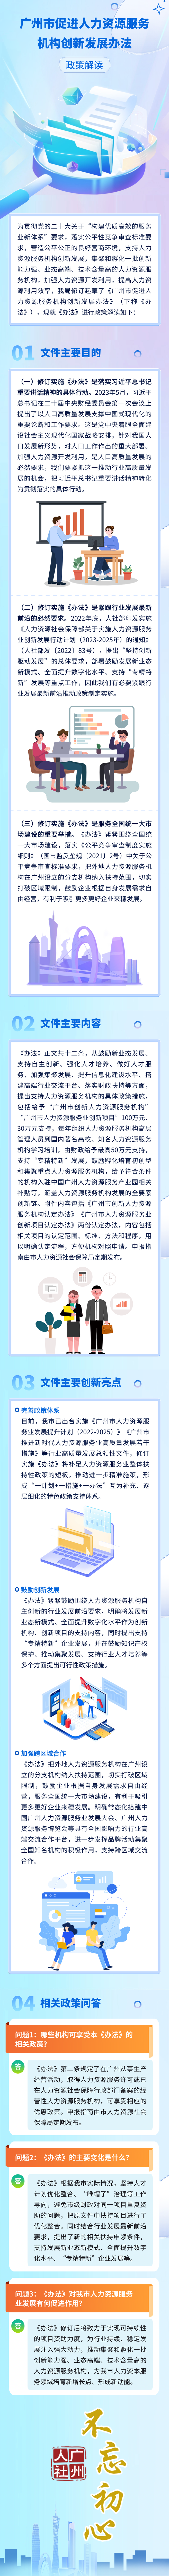 附件23《广州市促进人力资源服务机构创新发展办法》图文解读.png